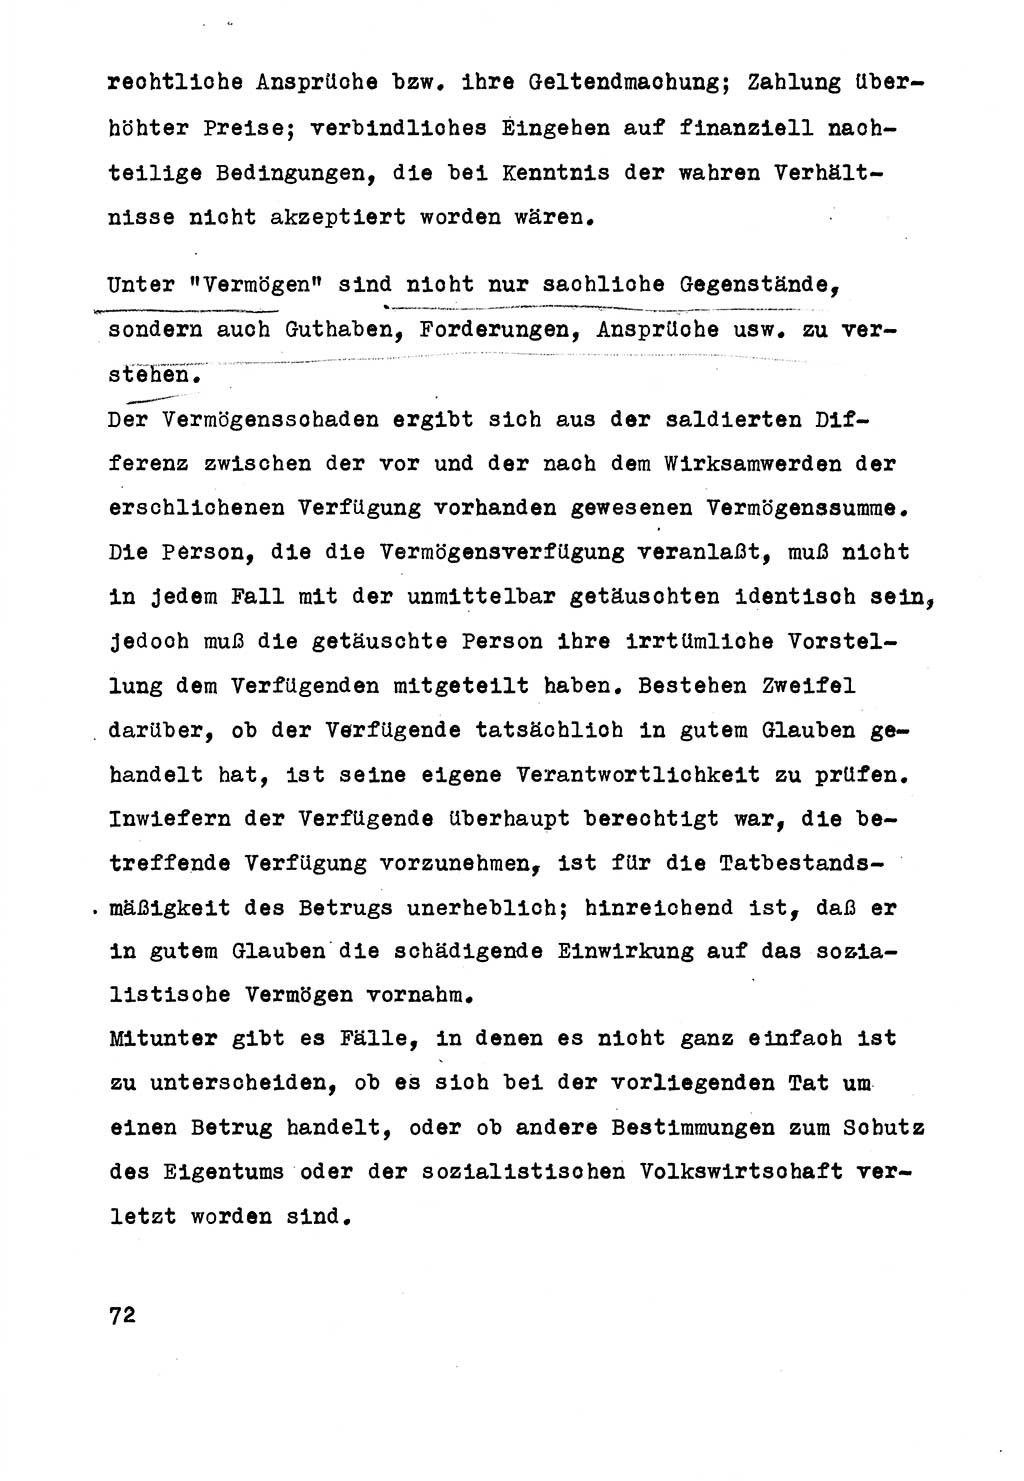 Strafrecht der DDR (Deutsche Demokratische Republik), Besonderer Teil, Lehrmaterial, Heft 5 1970, Seite 72 (Strafr. DDR BT Lehrmat. H. 5 1970, S. 72)